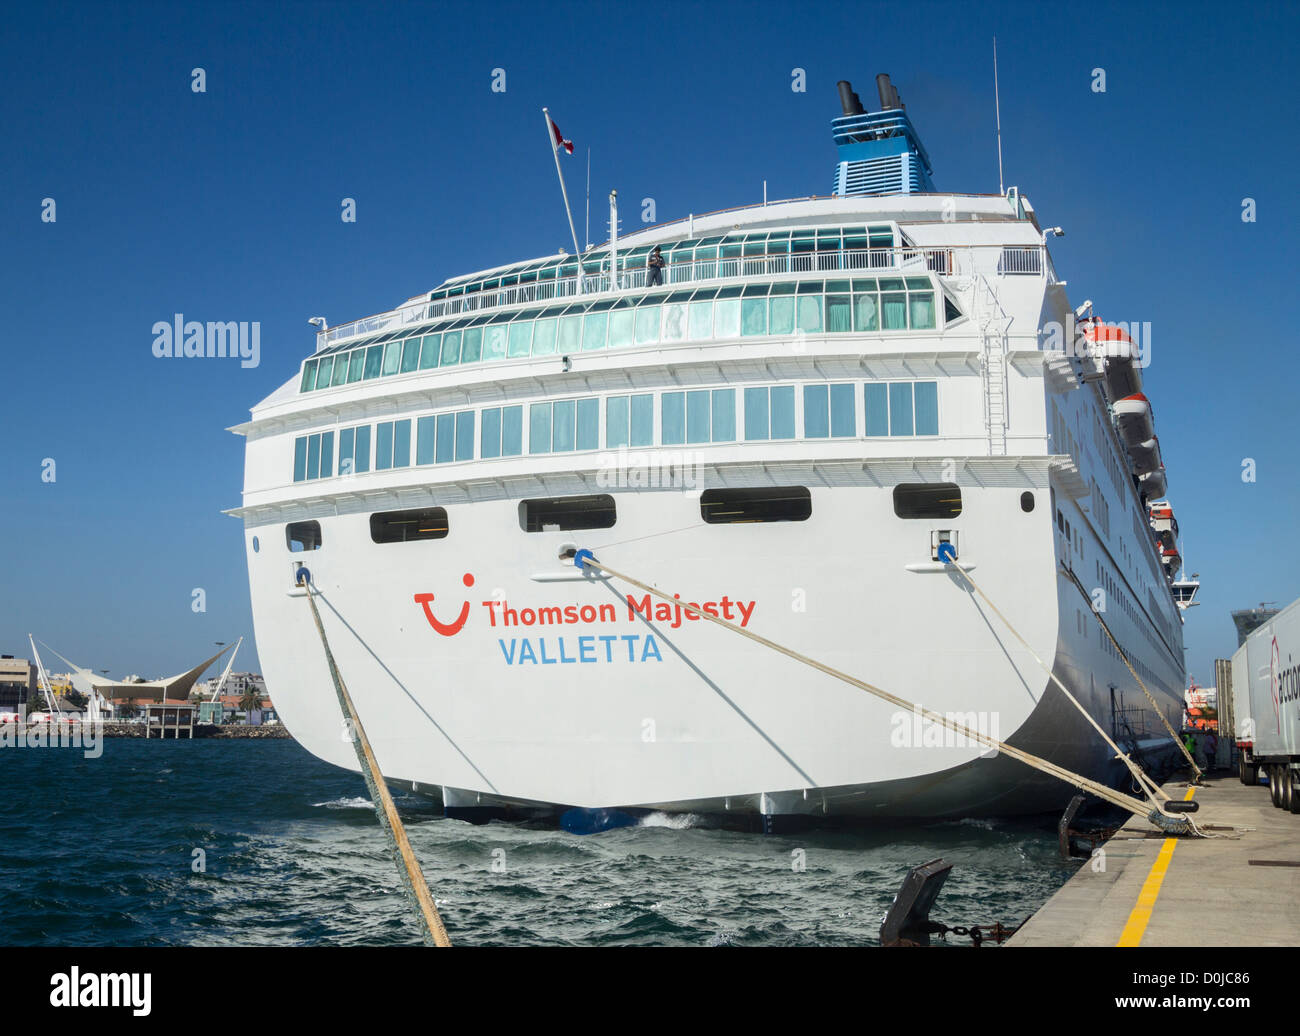 Thomson Majesty cruise ship Stock Photo - Alamy